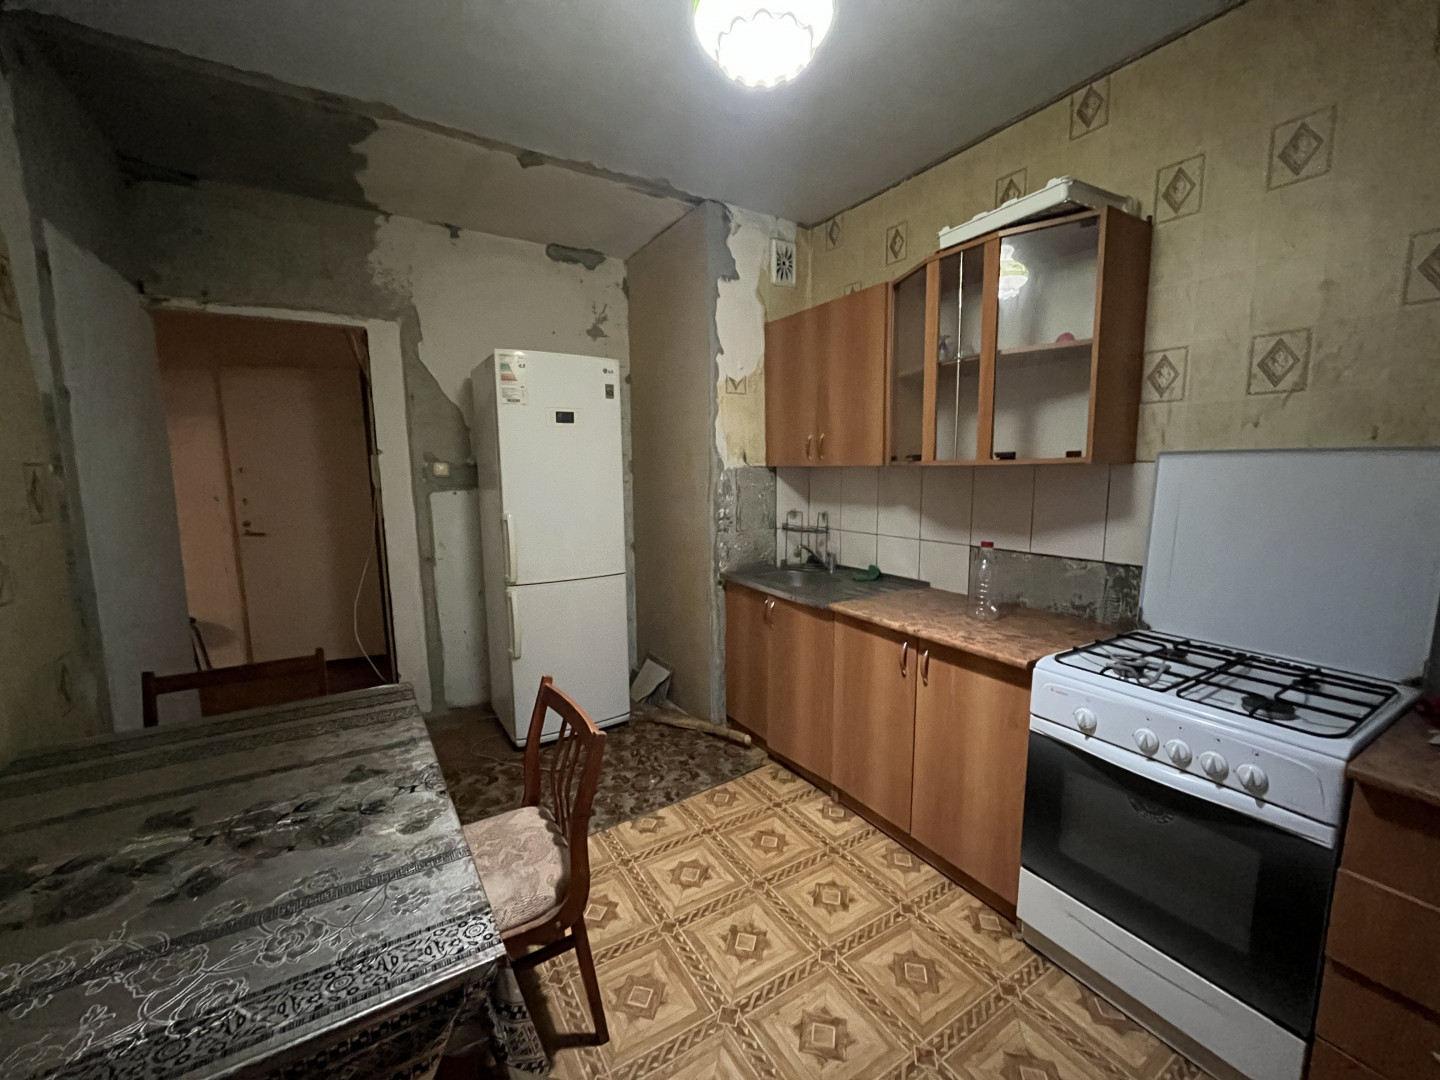 Квартира 3 комнатная в Майкоп г. район Черемушки р-н